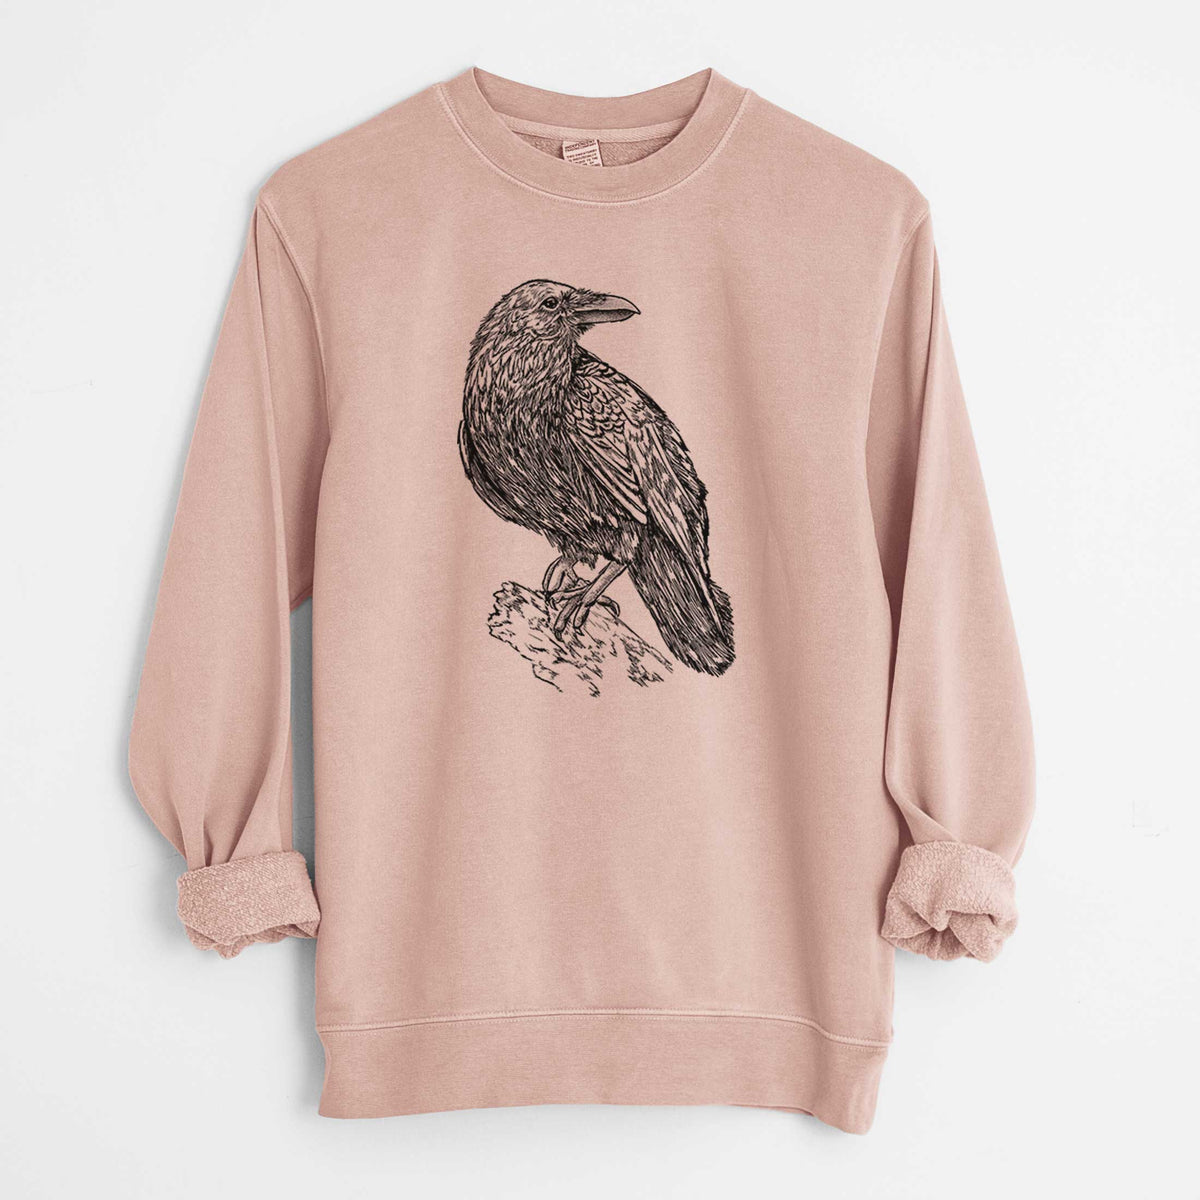 Corvus corax - Common Raven - Unisex Pigment Dyed Crew Sweatshirt